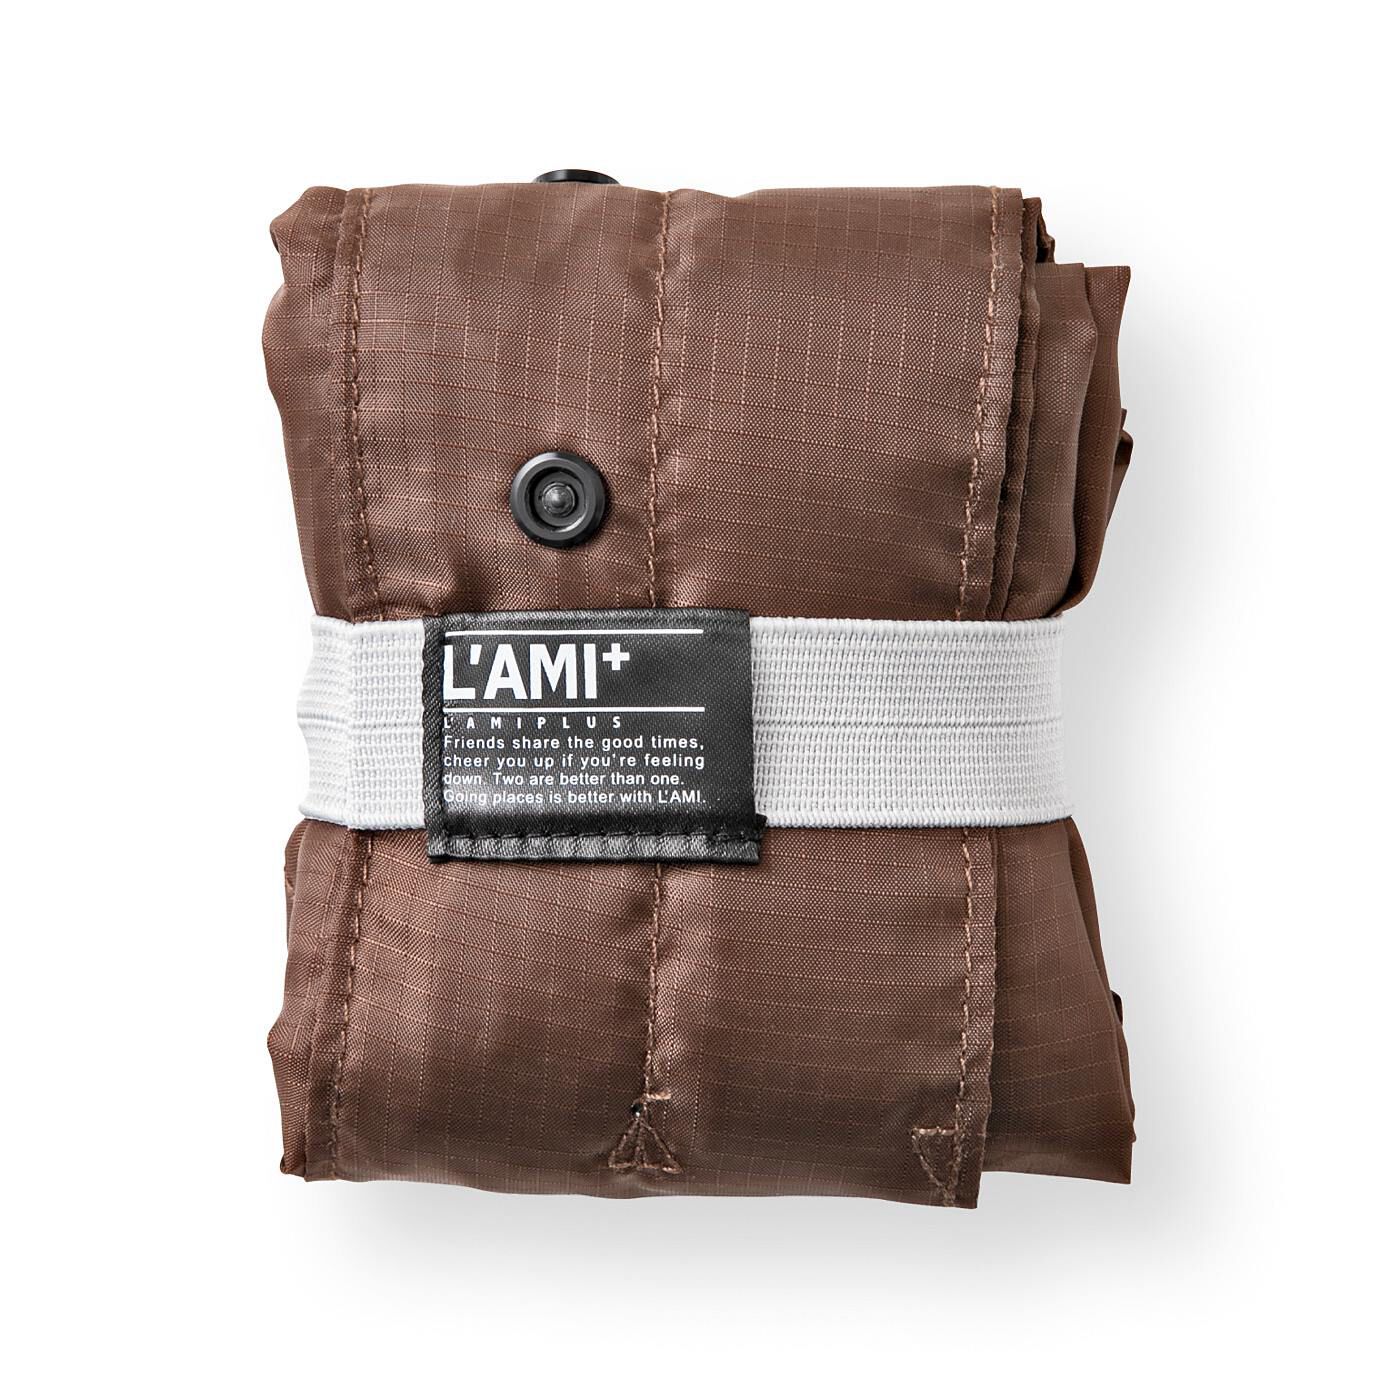 L'AMIPLUS|ラミプリュス　レインカバーにもなる 風呂敷みたいなエコバッグの会|コンパクトにたたんで持ち運びOK。